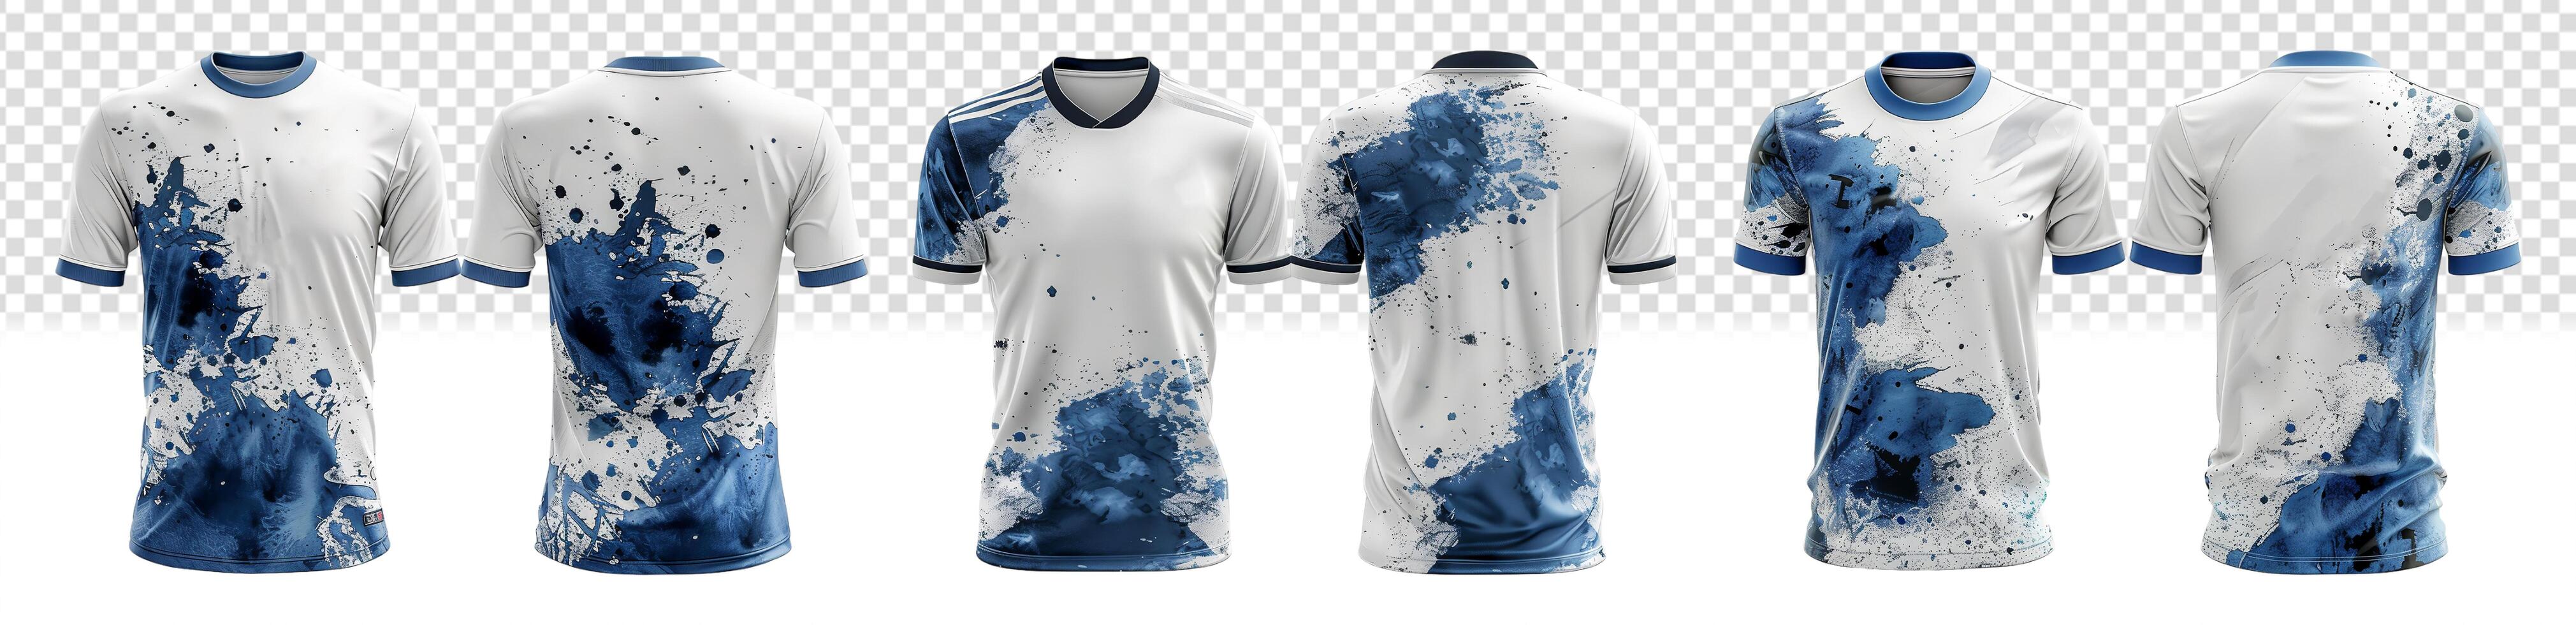 conjunto do branco Esportes Camisetas com azul salpicos abstrato padrão, frente e costas visualizar, foto